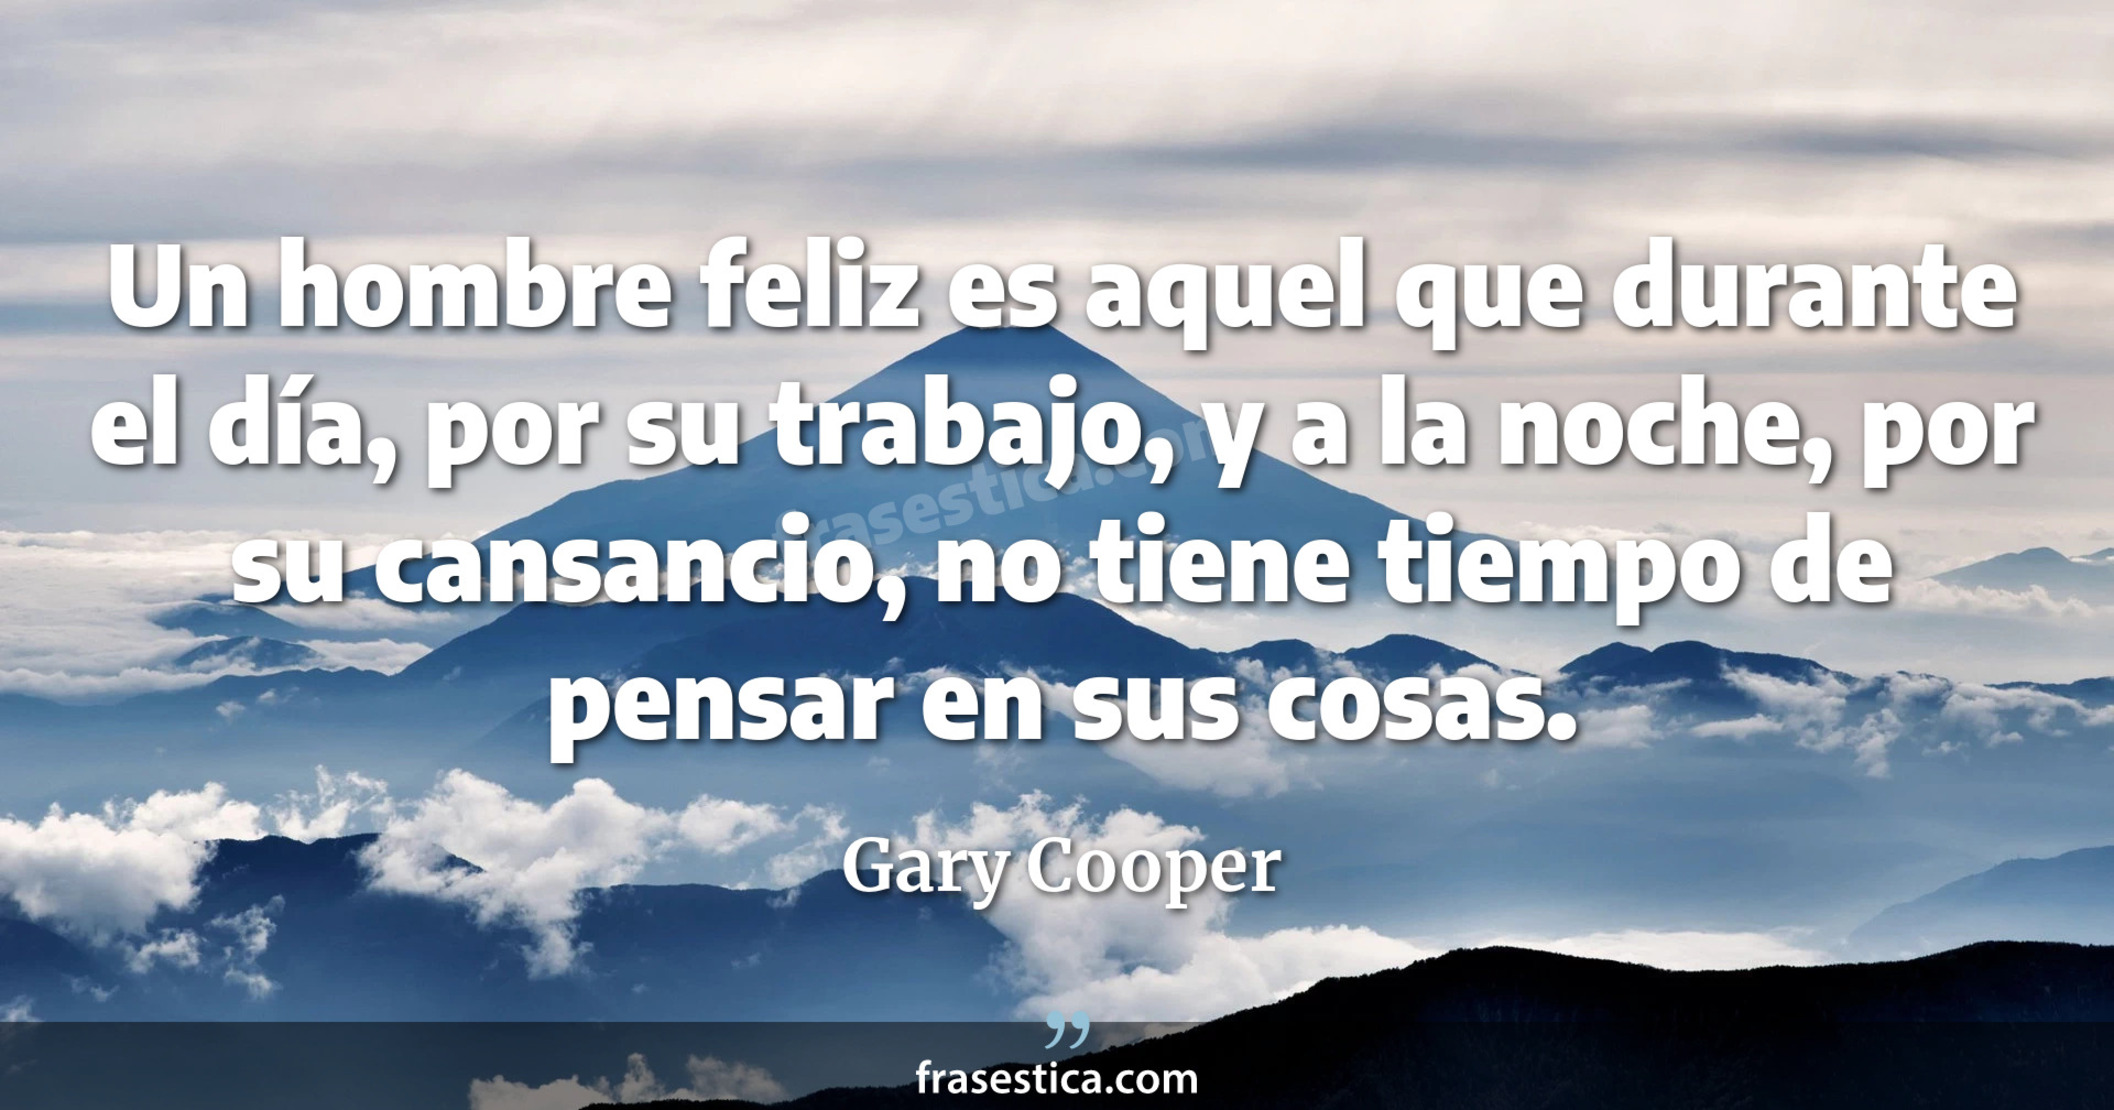 Un hombre feliz es aquel que durante el día, por su trabajo, y a la noche, por su cansancio, no tiene tiempo de pensar en sus cosas. - Gary Cooper